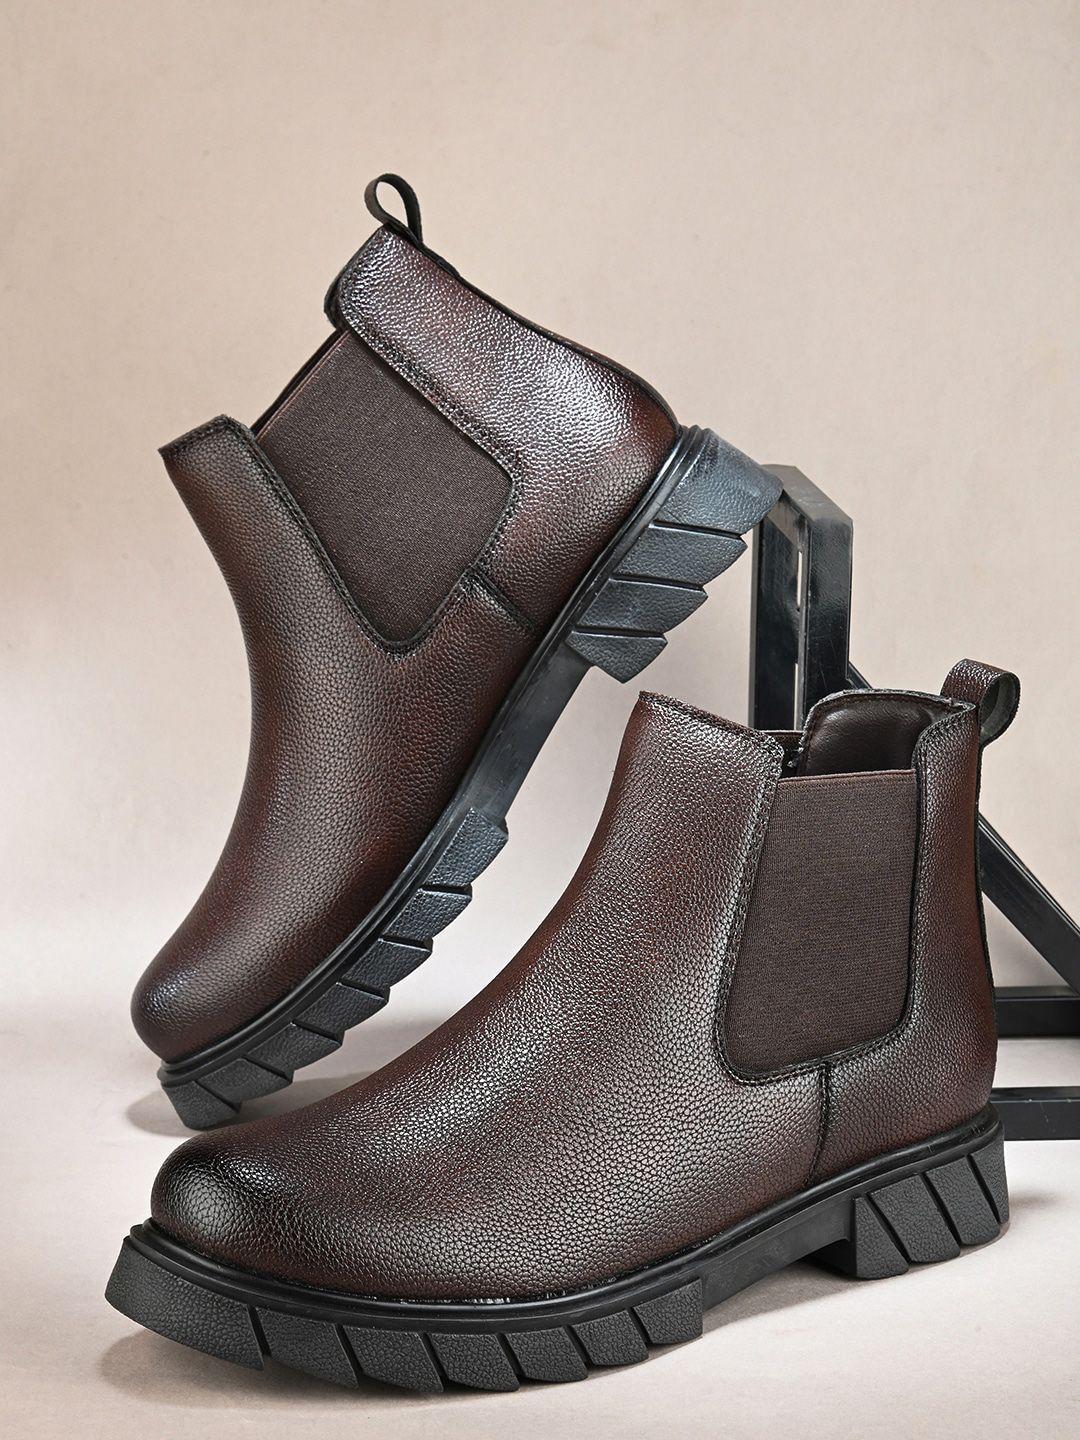 the roadster lifestyle co. men brown mid top block-heel chelsea boots